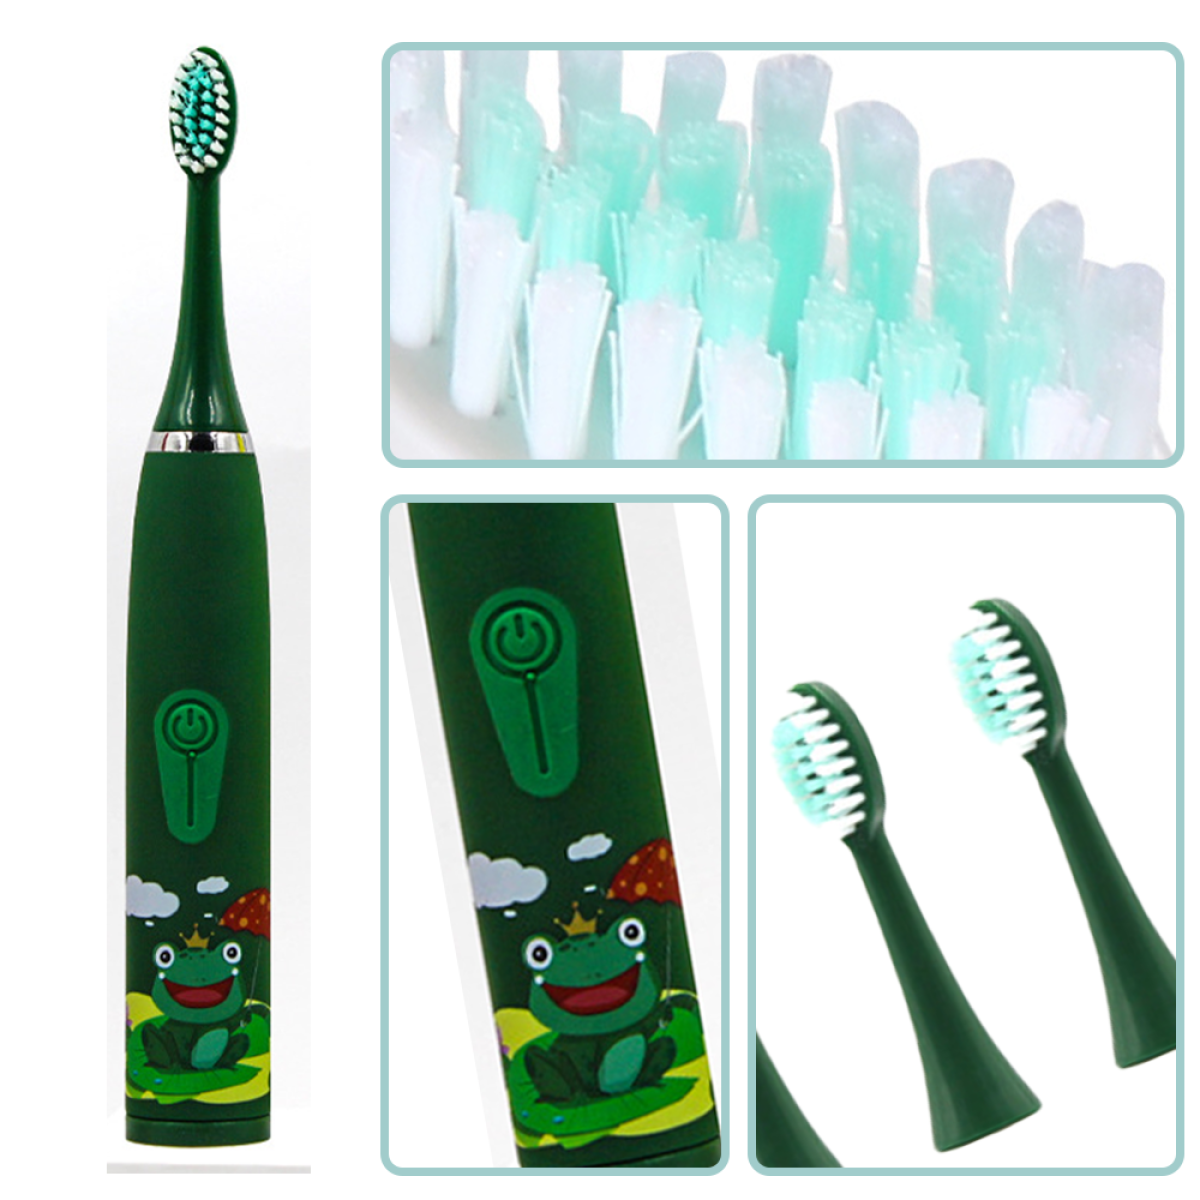 ELKUAIE 4 Reinigungsstufen Elektrische green Zahnbürste